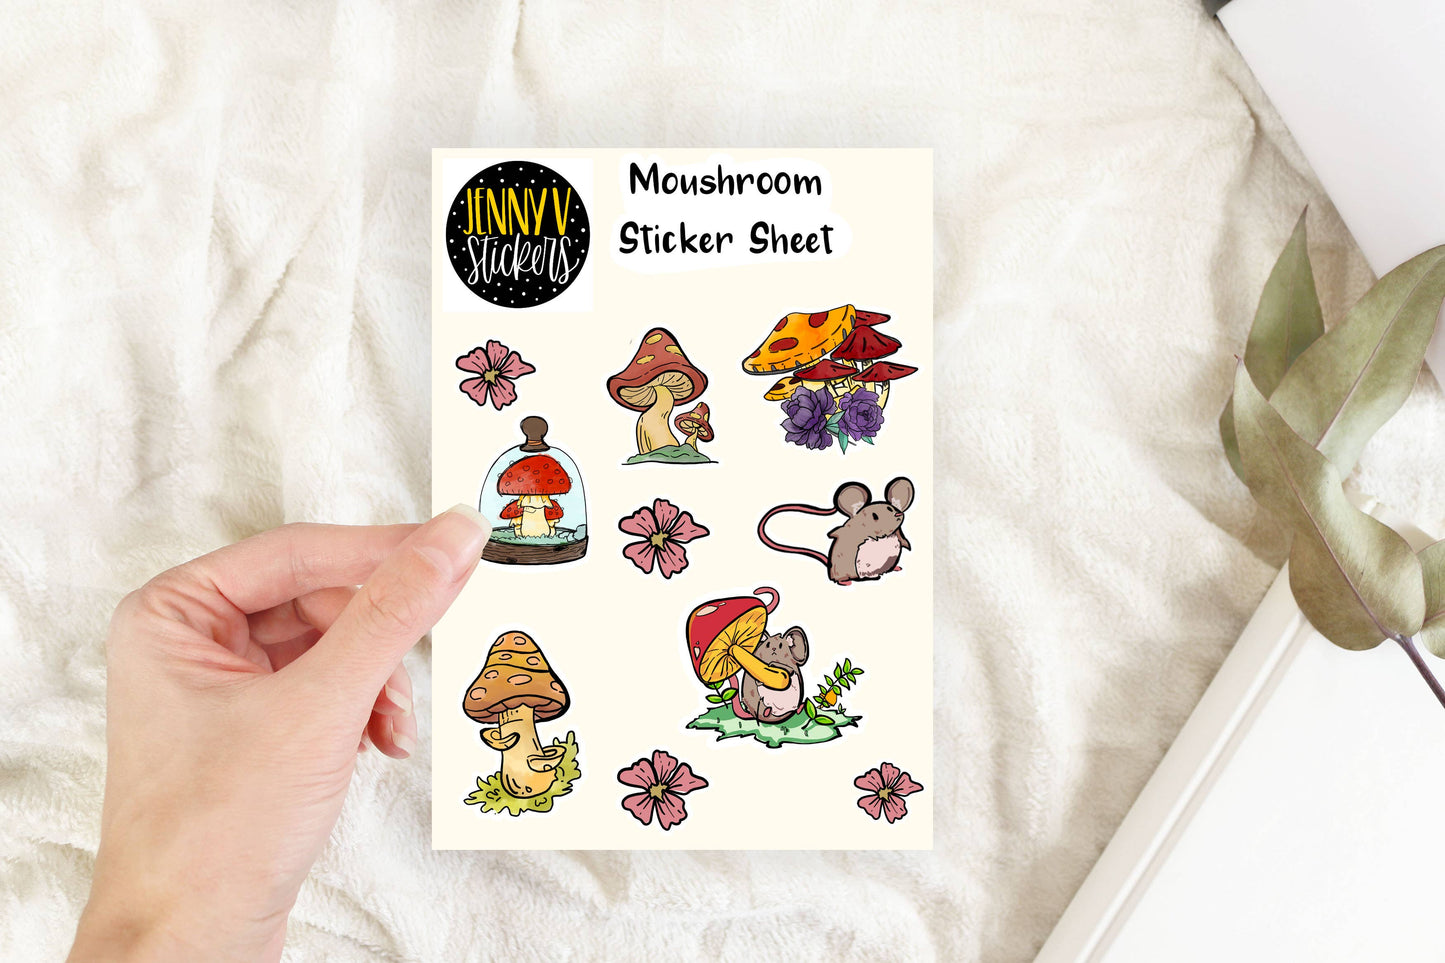 Moushroom Sticker Sheet